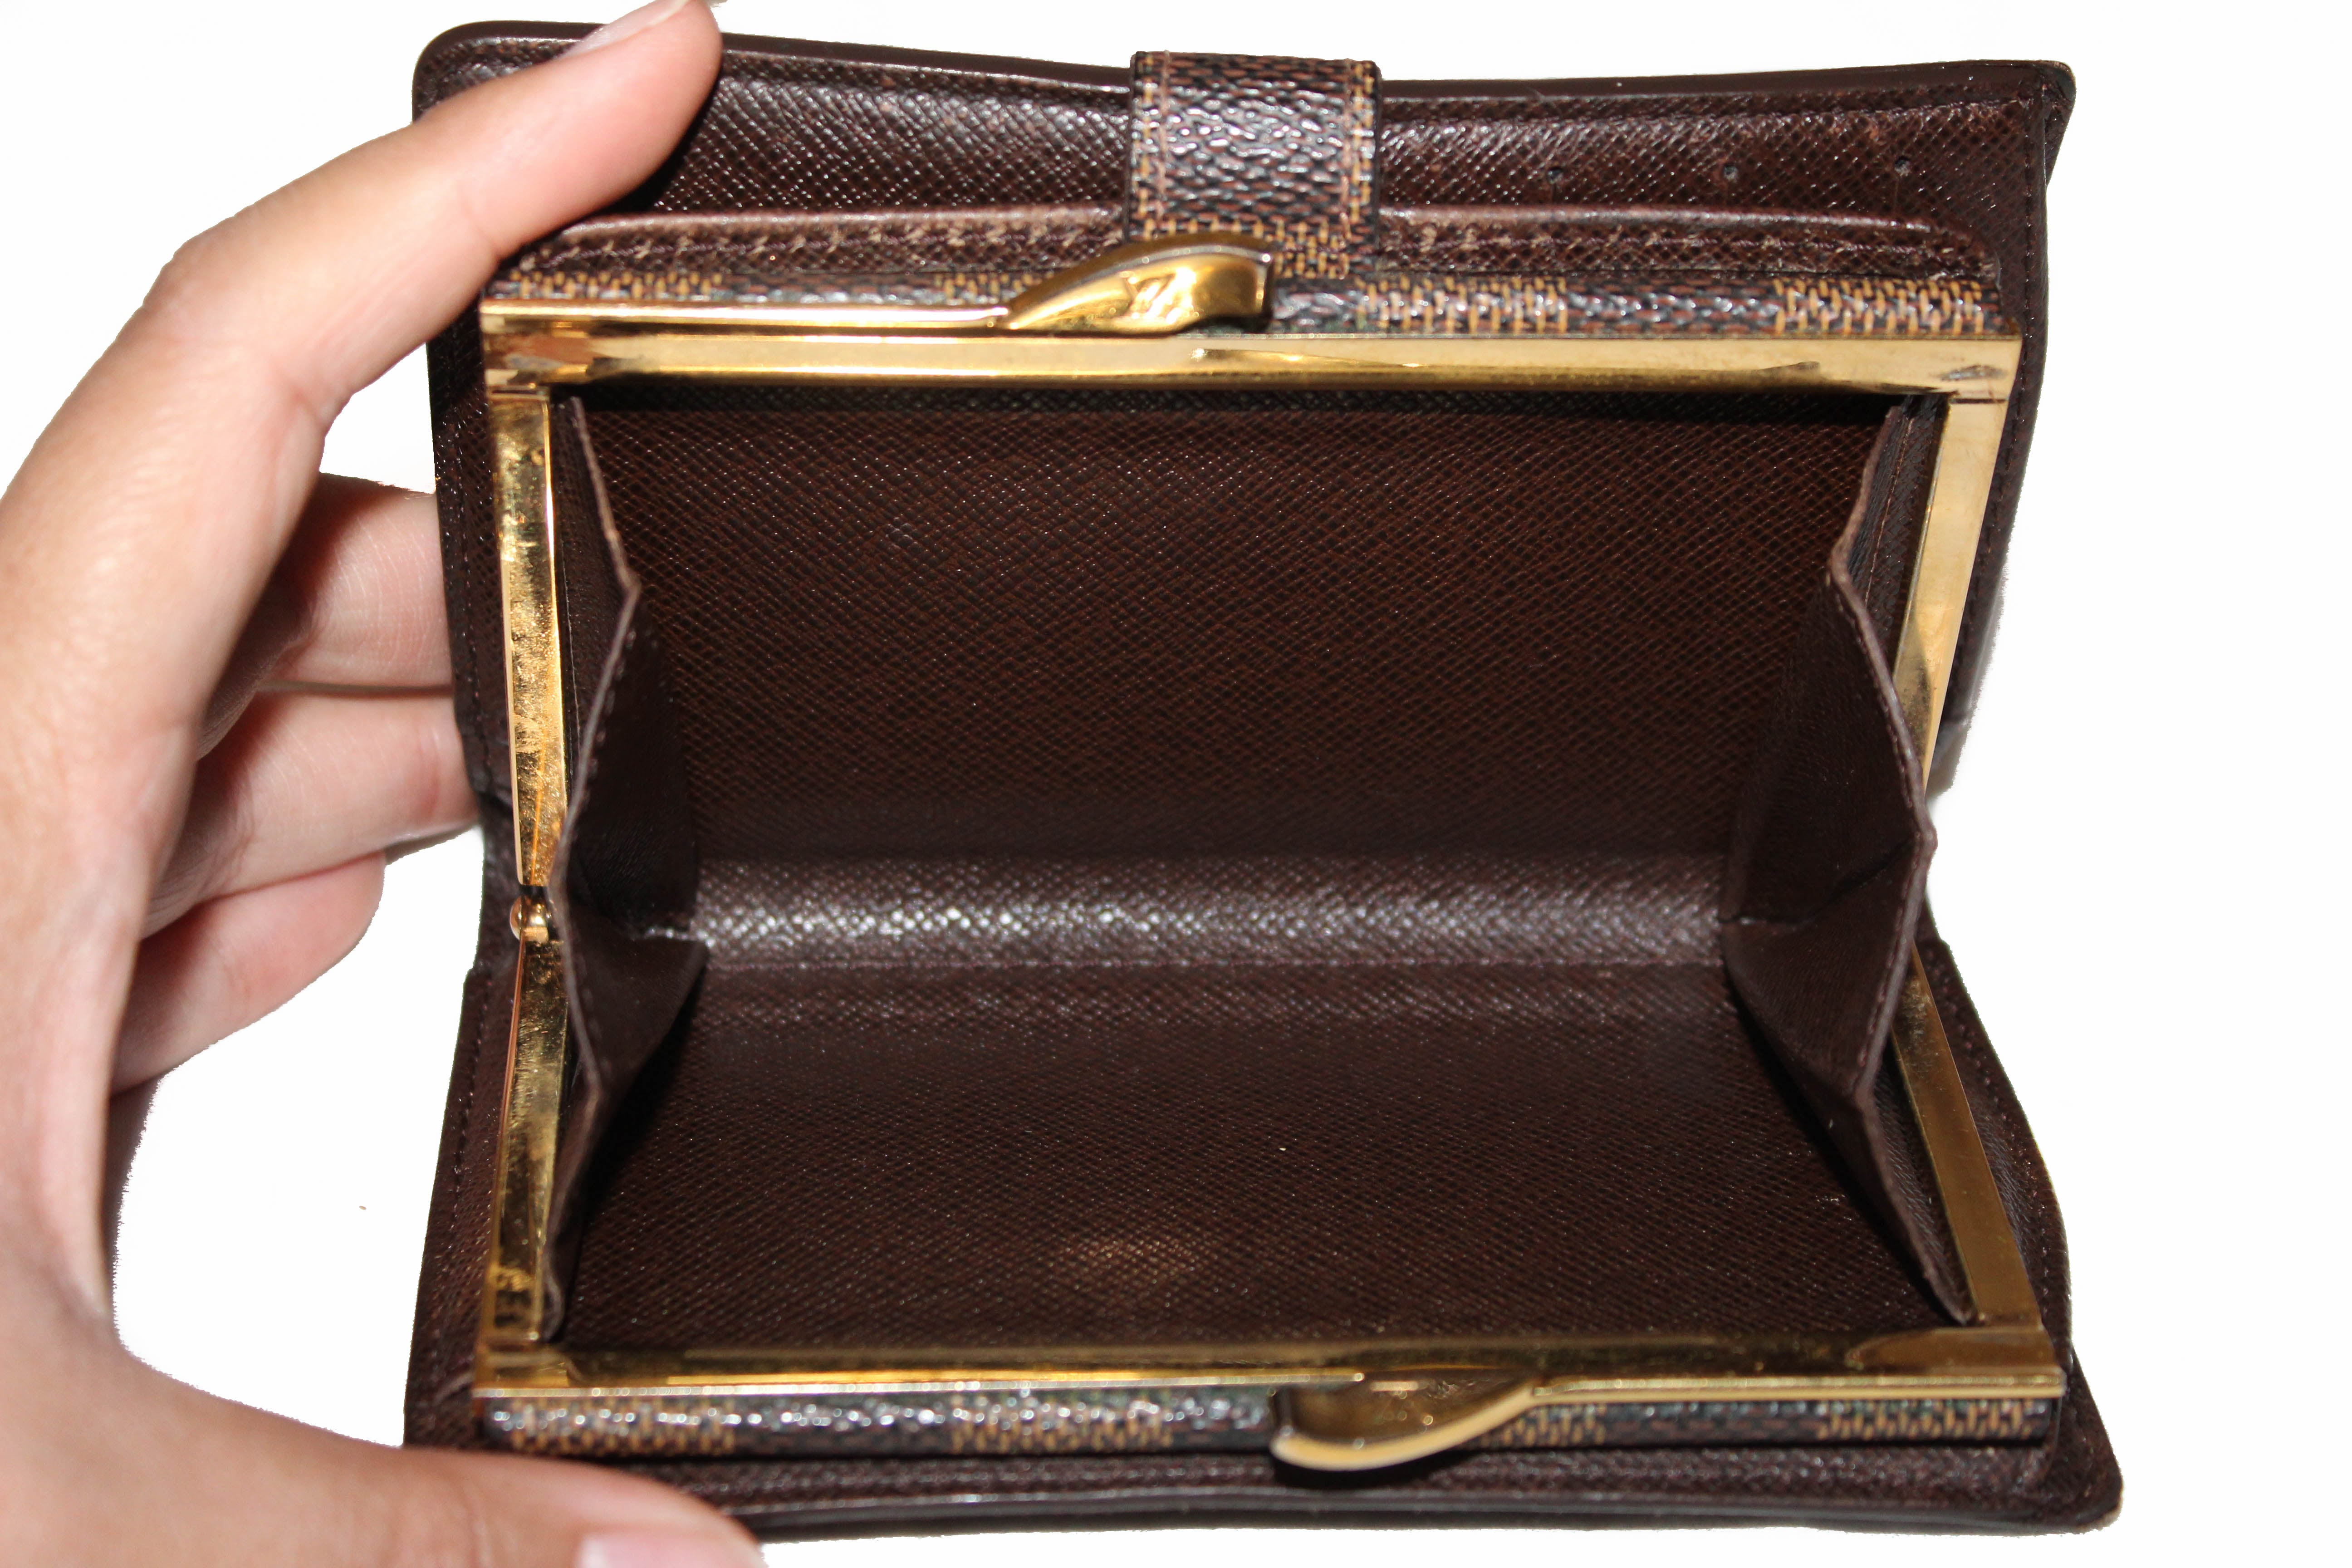 Authentic Louis Vuitton Damier Ebene French Purse Wallet